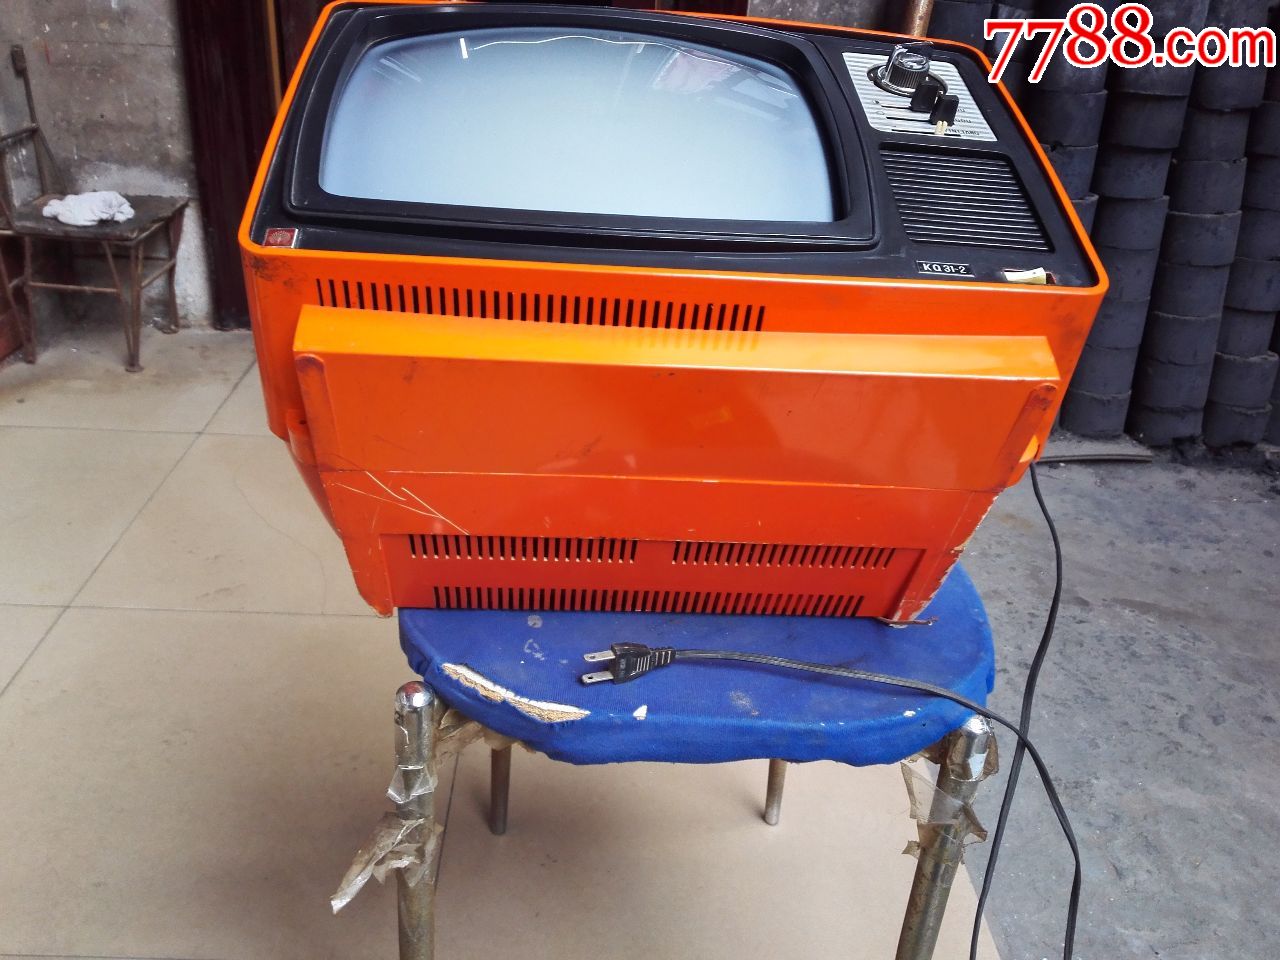 少见孔雀31—2型黑白电视机